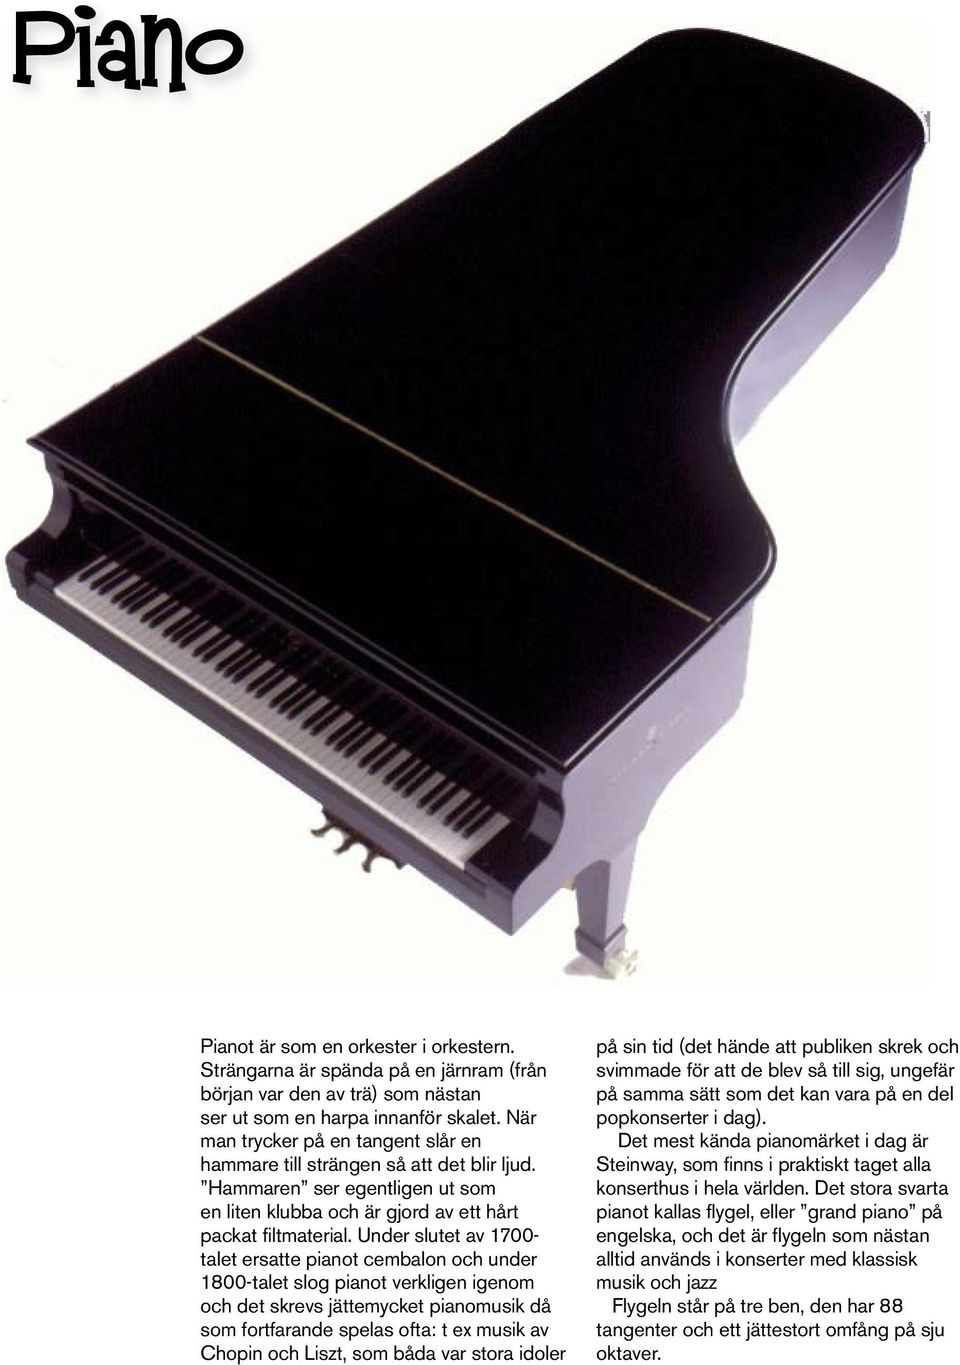 Under slutet av 1700- talet ersatte pianot cembalon och under 1800-talet slog pianot verkligen igenom och det skrevs jättemycket pianomusik då som fortfarande spelas ofta: t ex musik av Chopin och